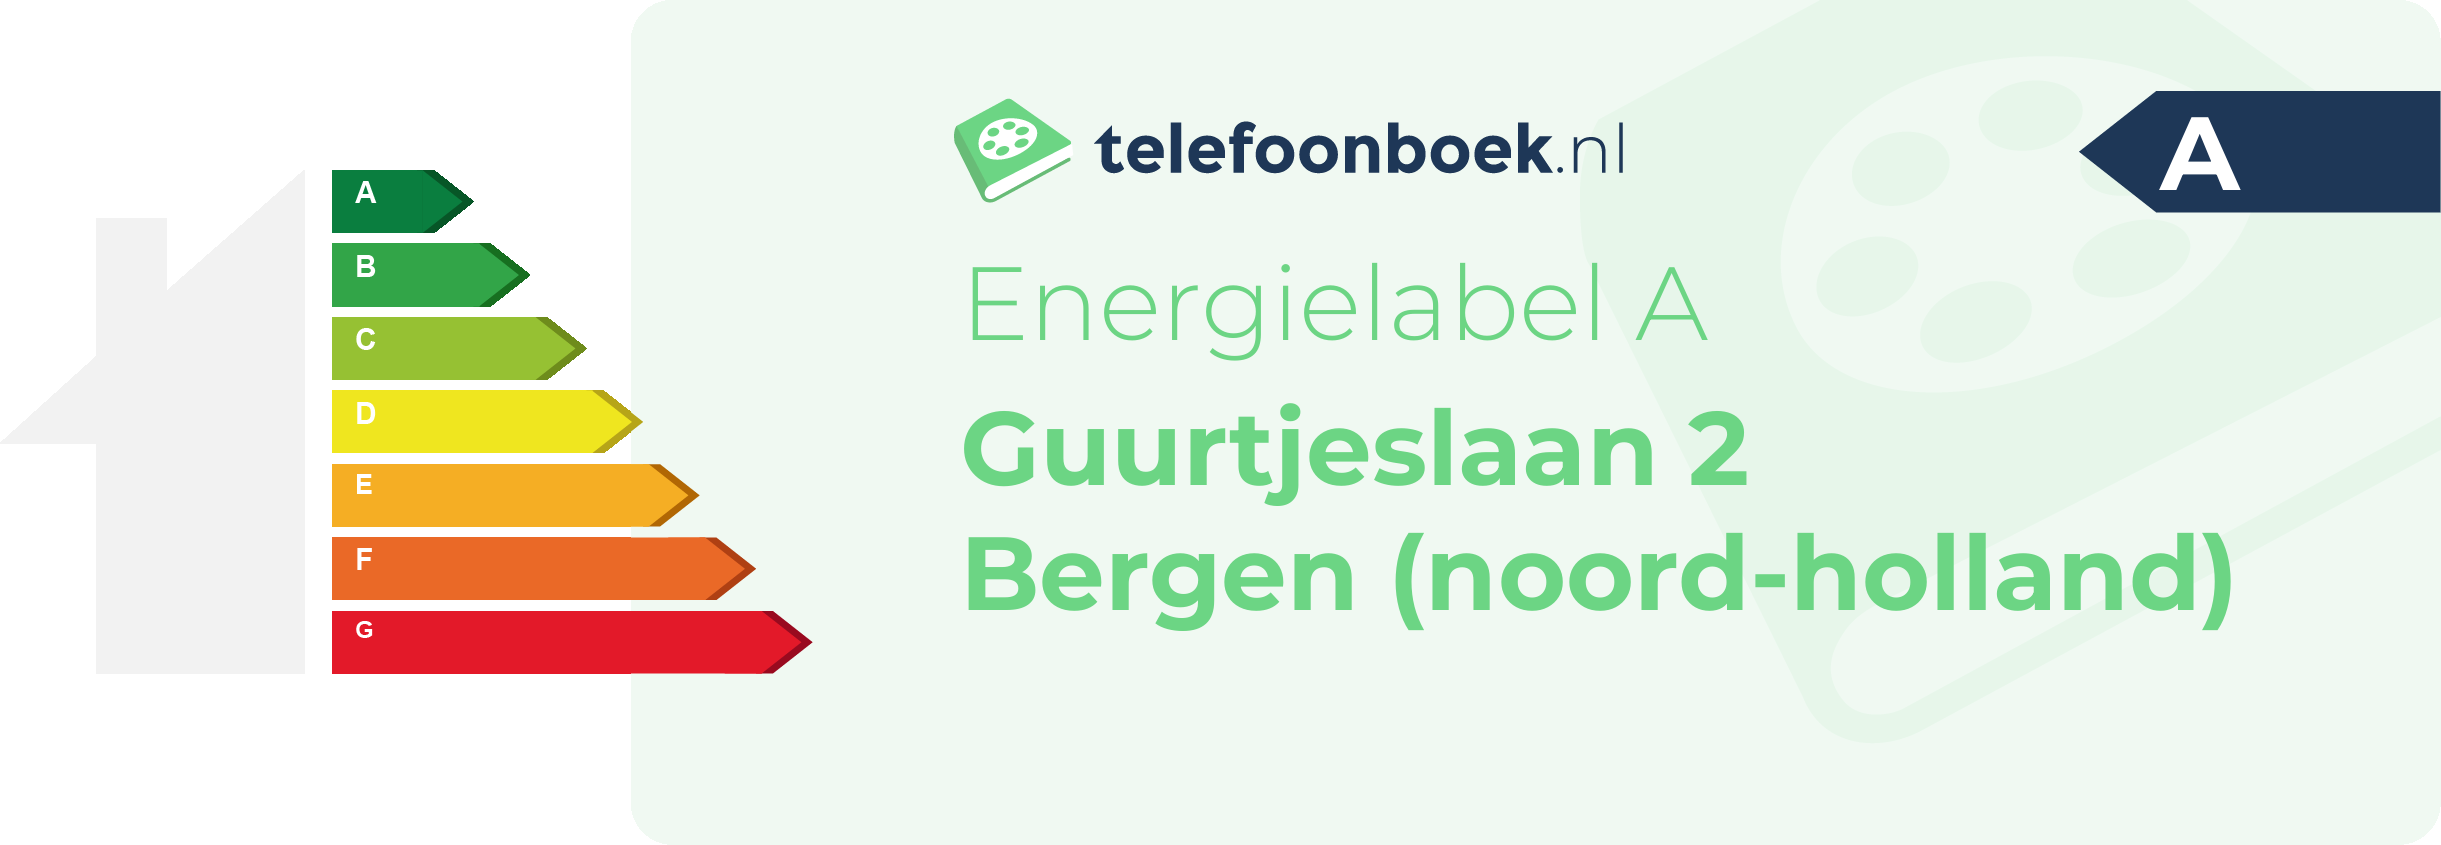 Energielabel Guurtjeslaan 2 Bergen (Noord-Holland)